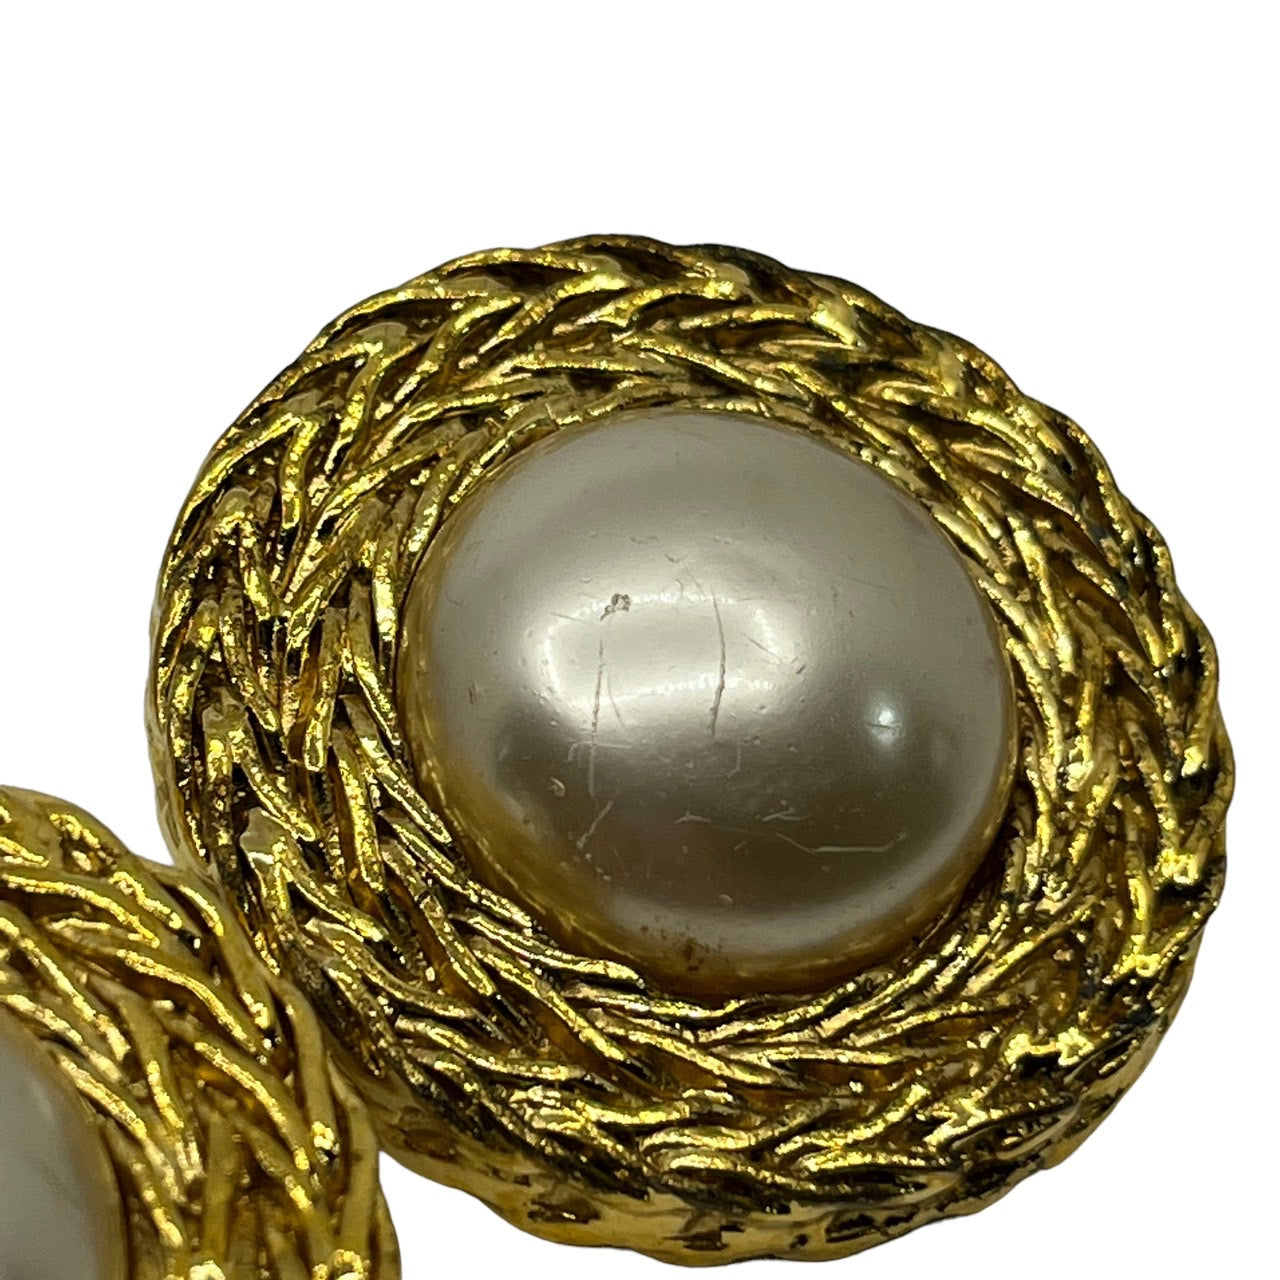 CHANEL(シャネル) 1990's vintage pearl gold earrings/ヴィンテージビッグパールゴールドイヤリング ゴールド 刻印2 5　ヴィクトワール・ドゥ・カステラーヌののデザイン